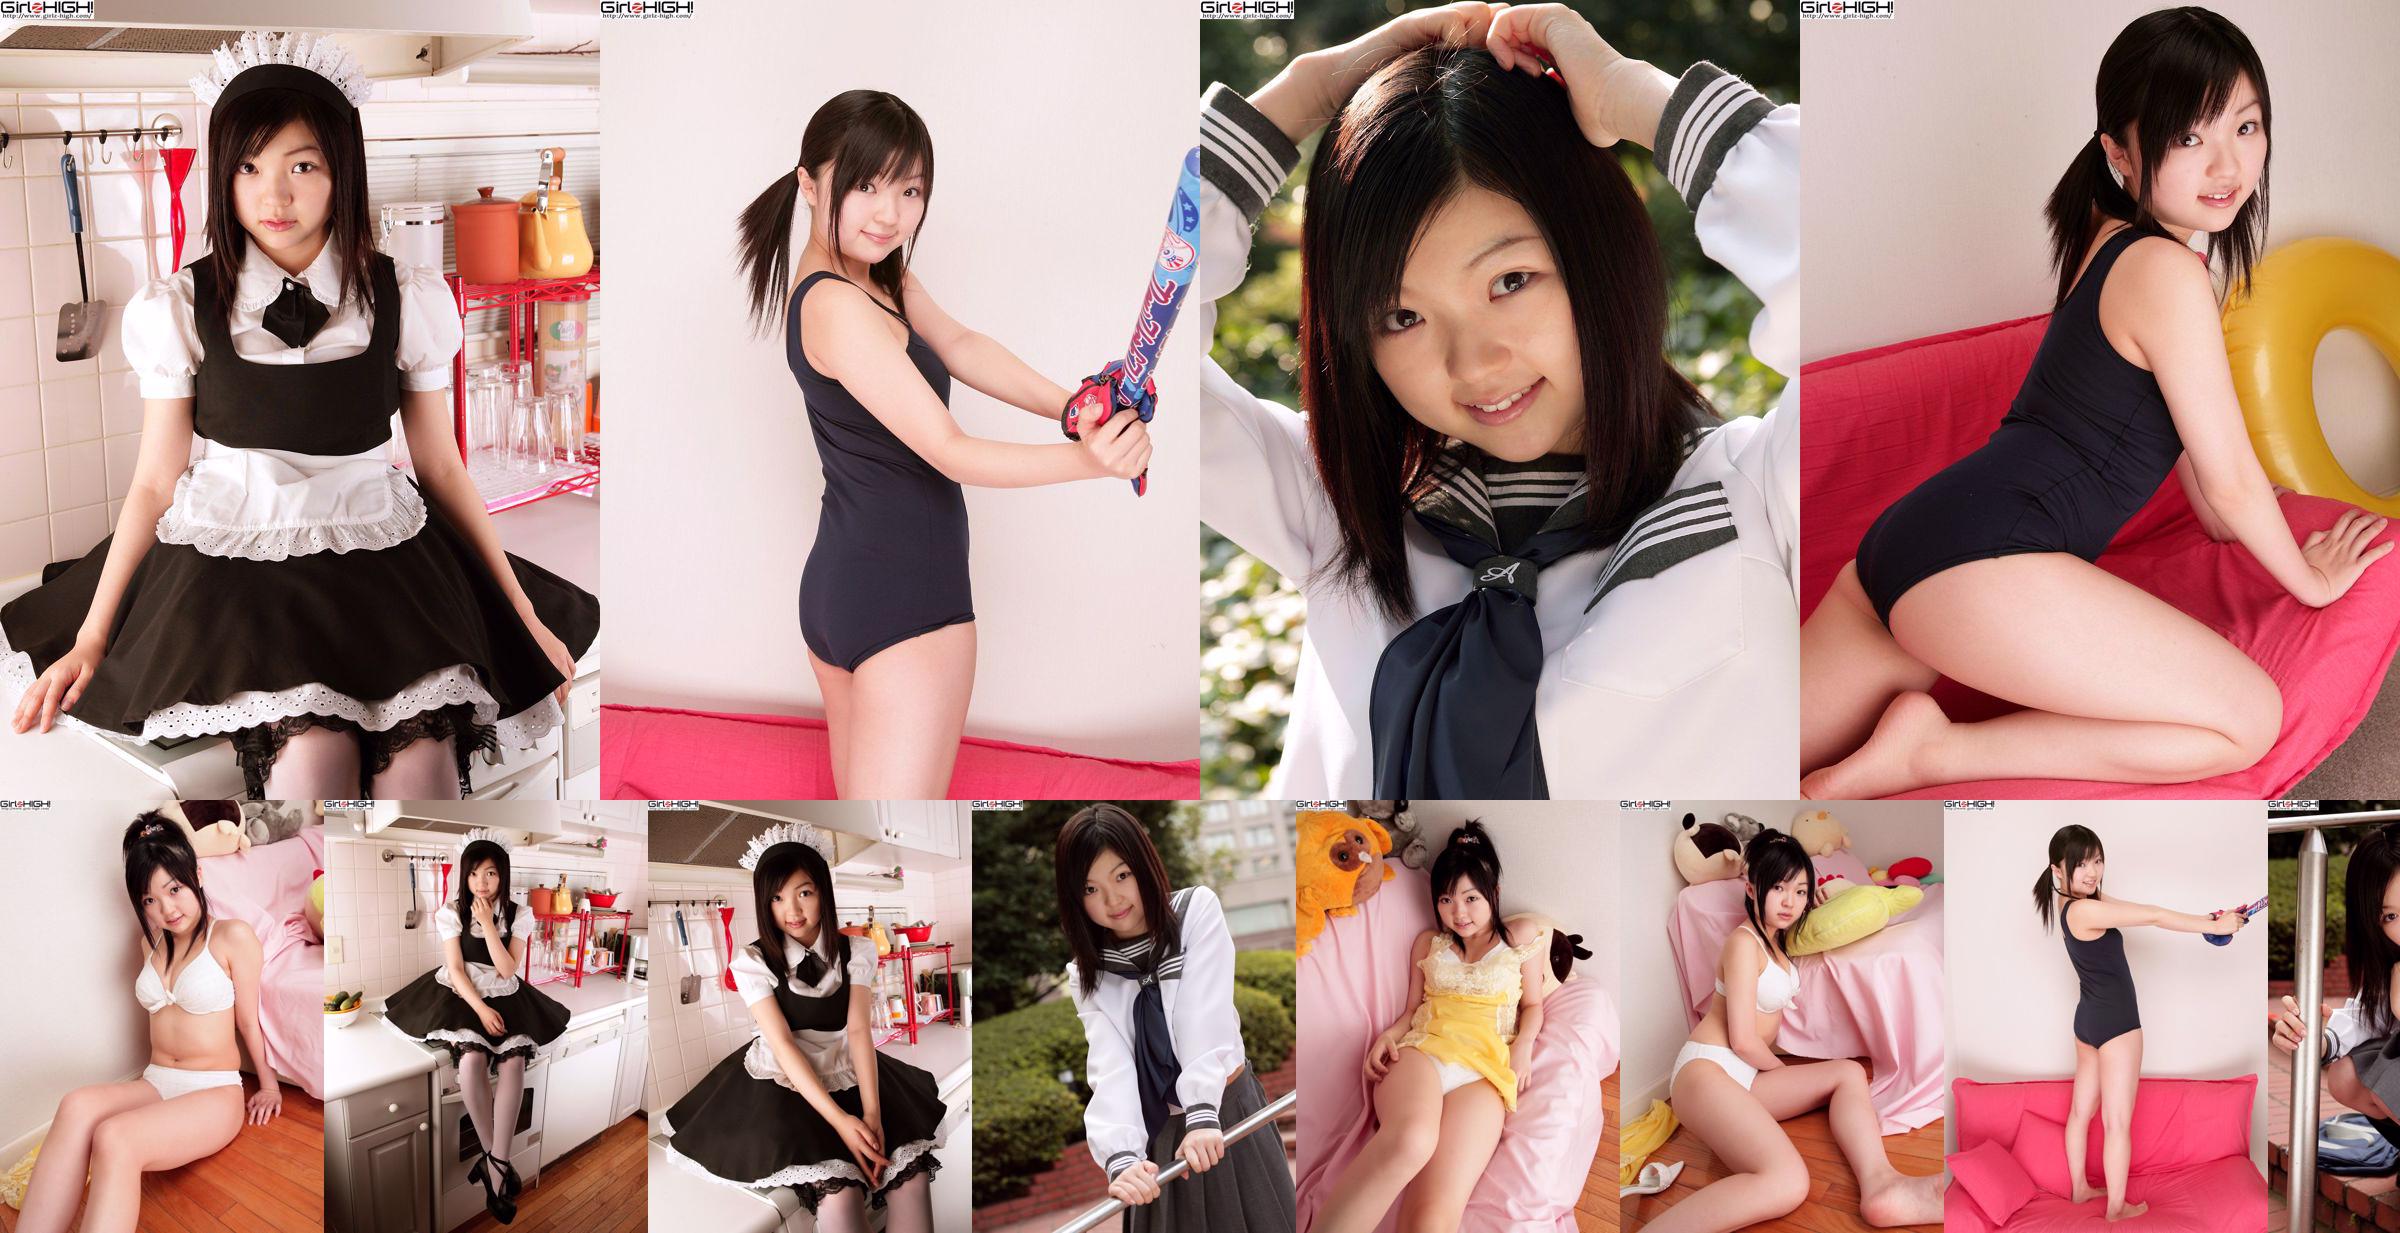 [Girlz-High] Misaki Moe Misaki Gravure Gallery-g074 Conjunto de fotos 04 No.bc42bf Página 4